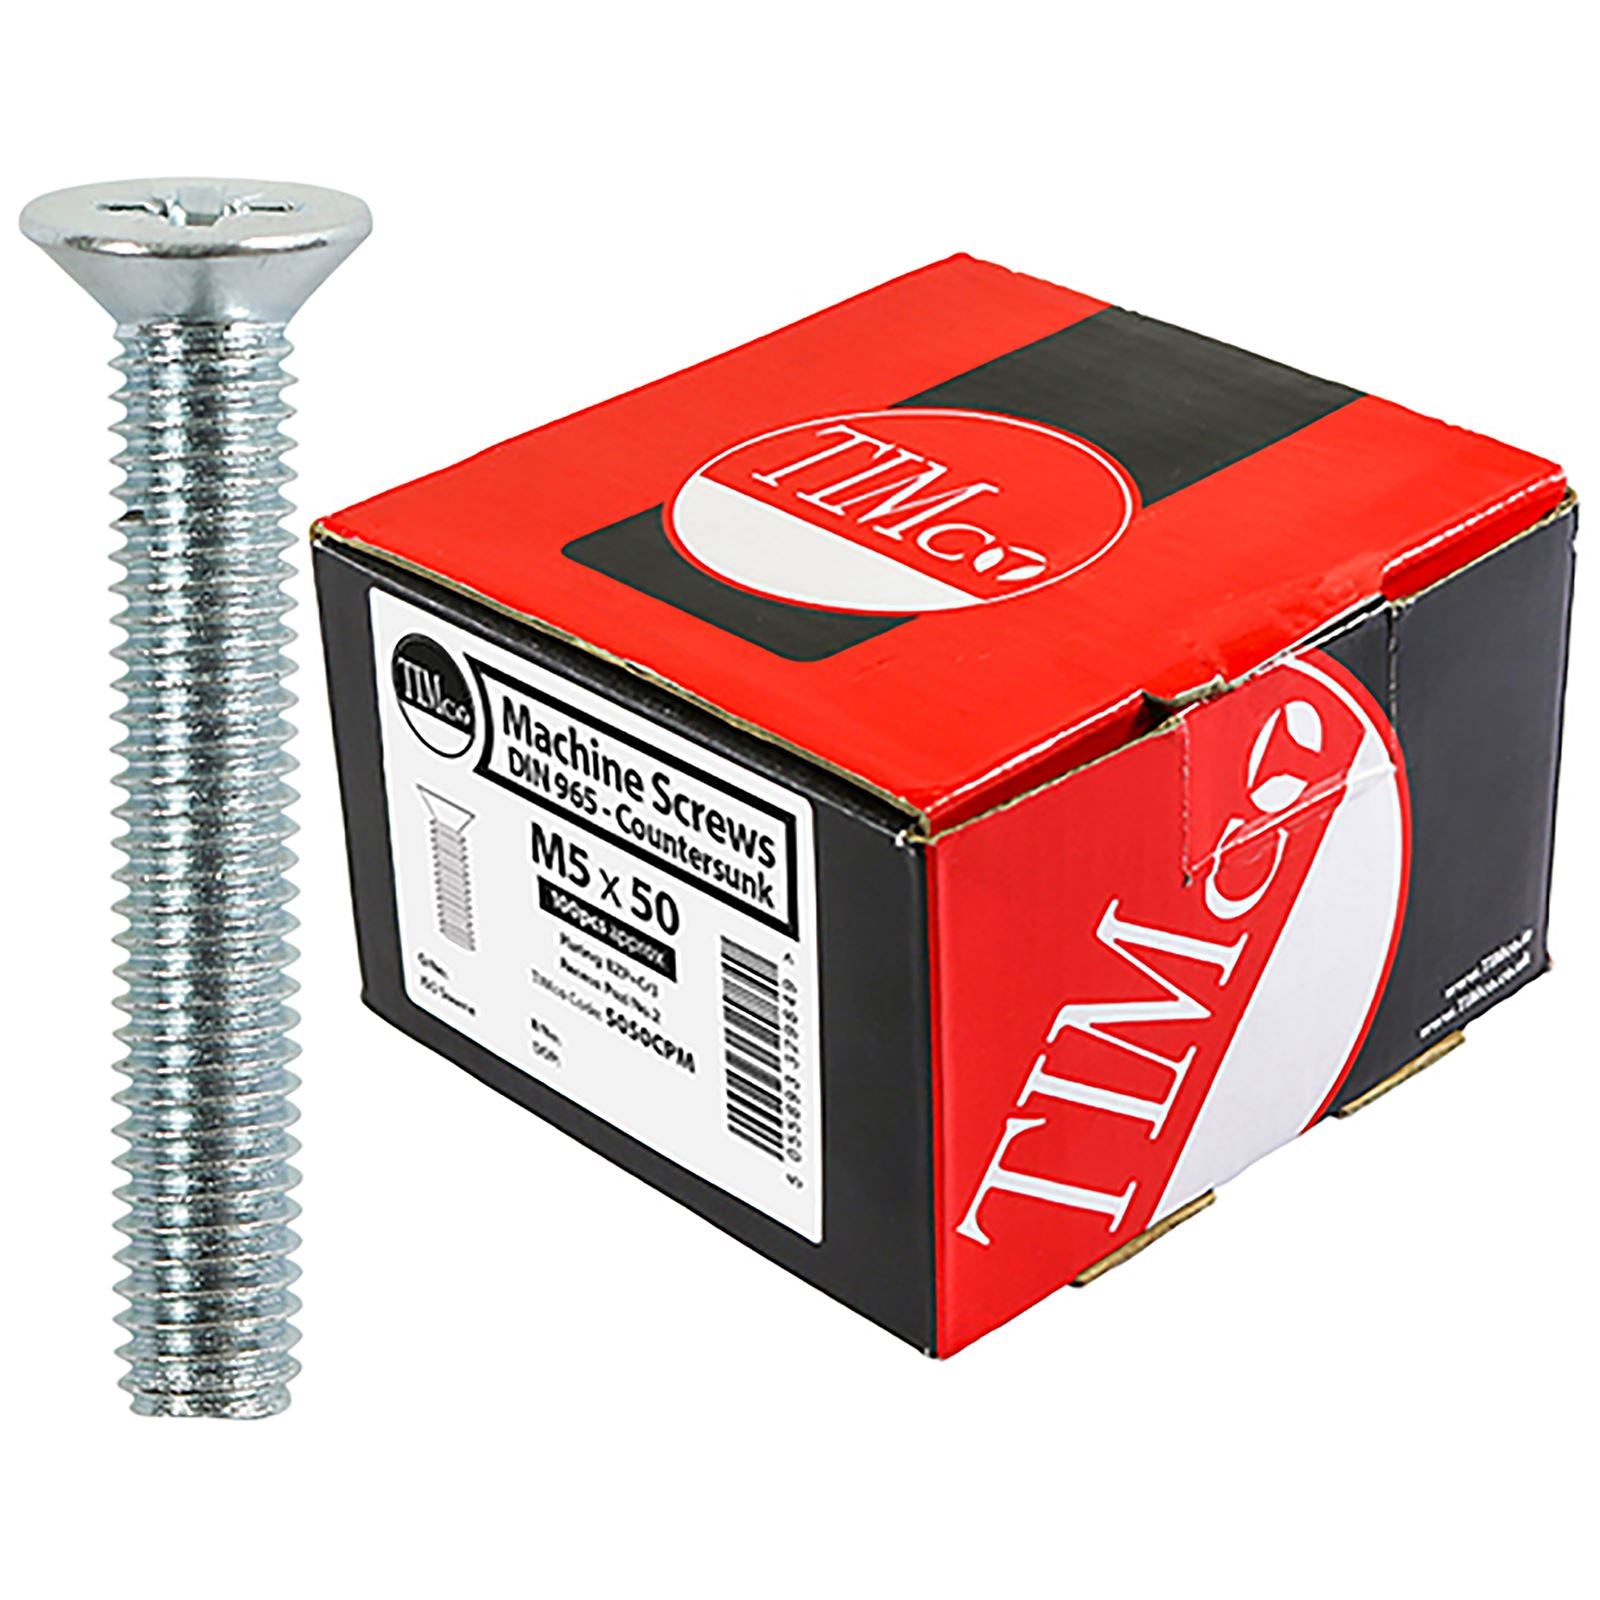 TIMCO Machine Screws Metric Thread Pozi Countersunk Zinc M4 M5 M6 100 Box